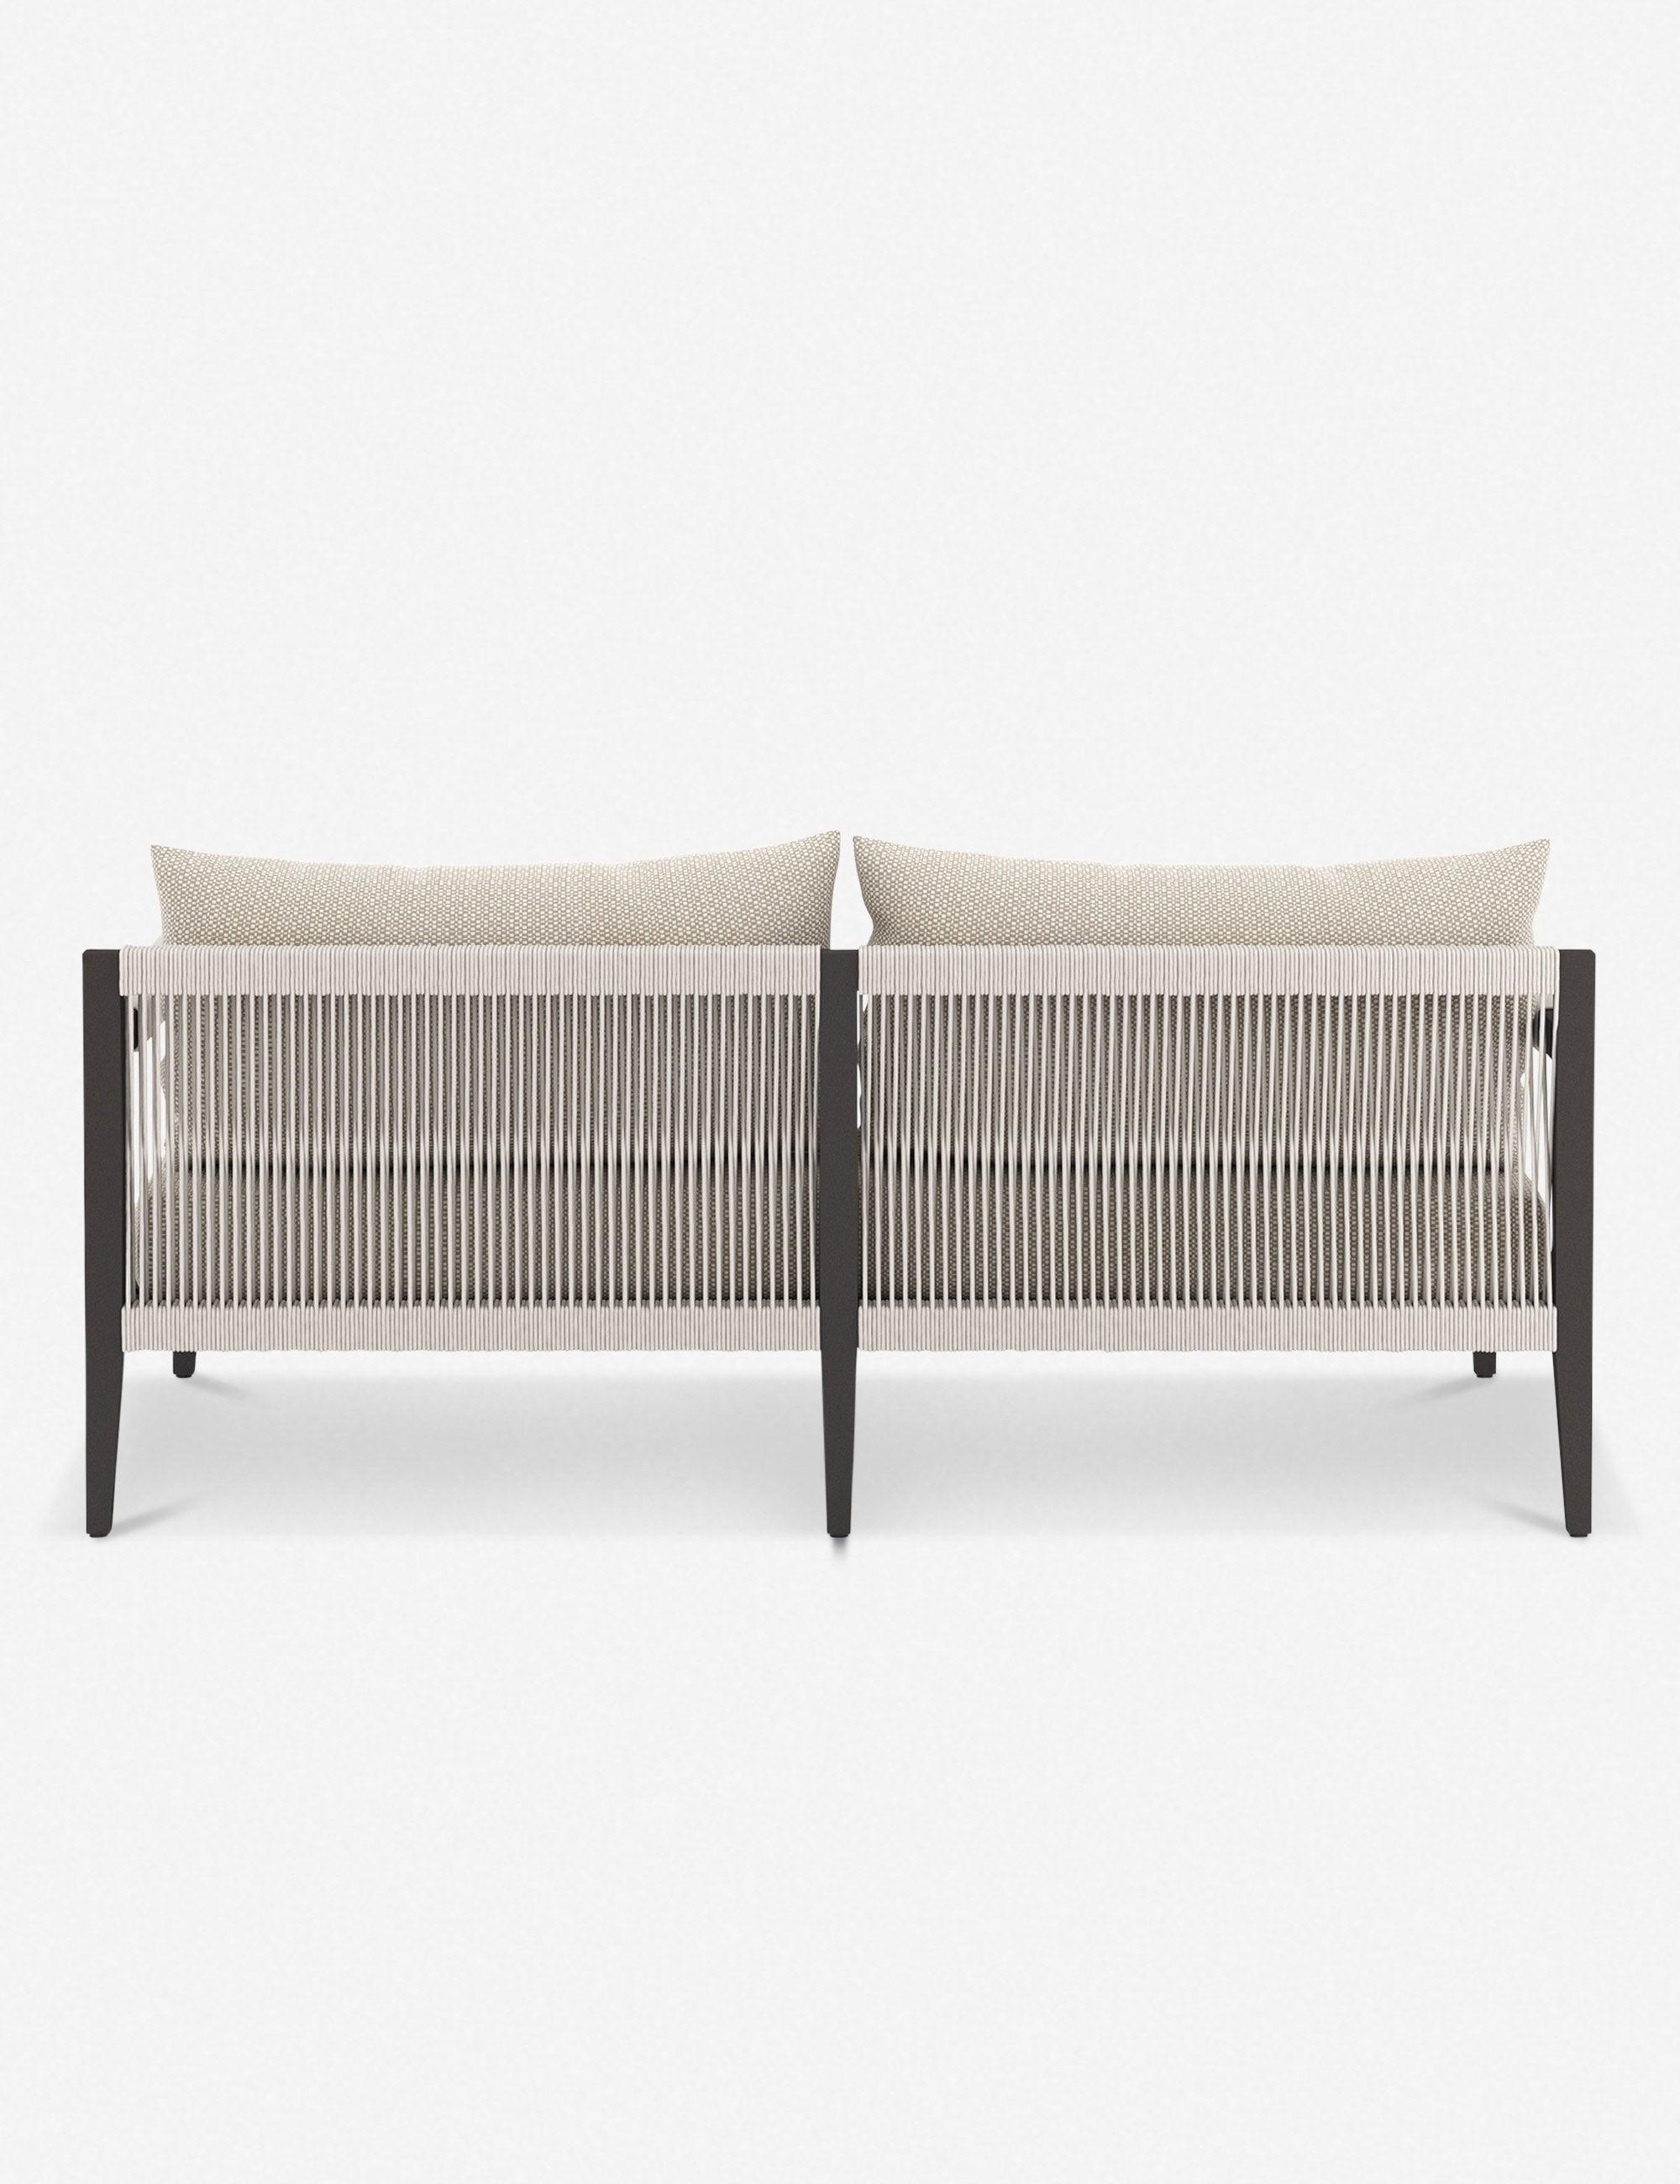 Cadenza 63" Bronze/Sand Contemporary Metal Sectional Sofa